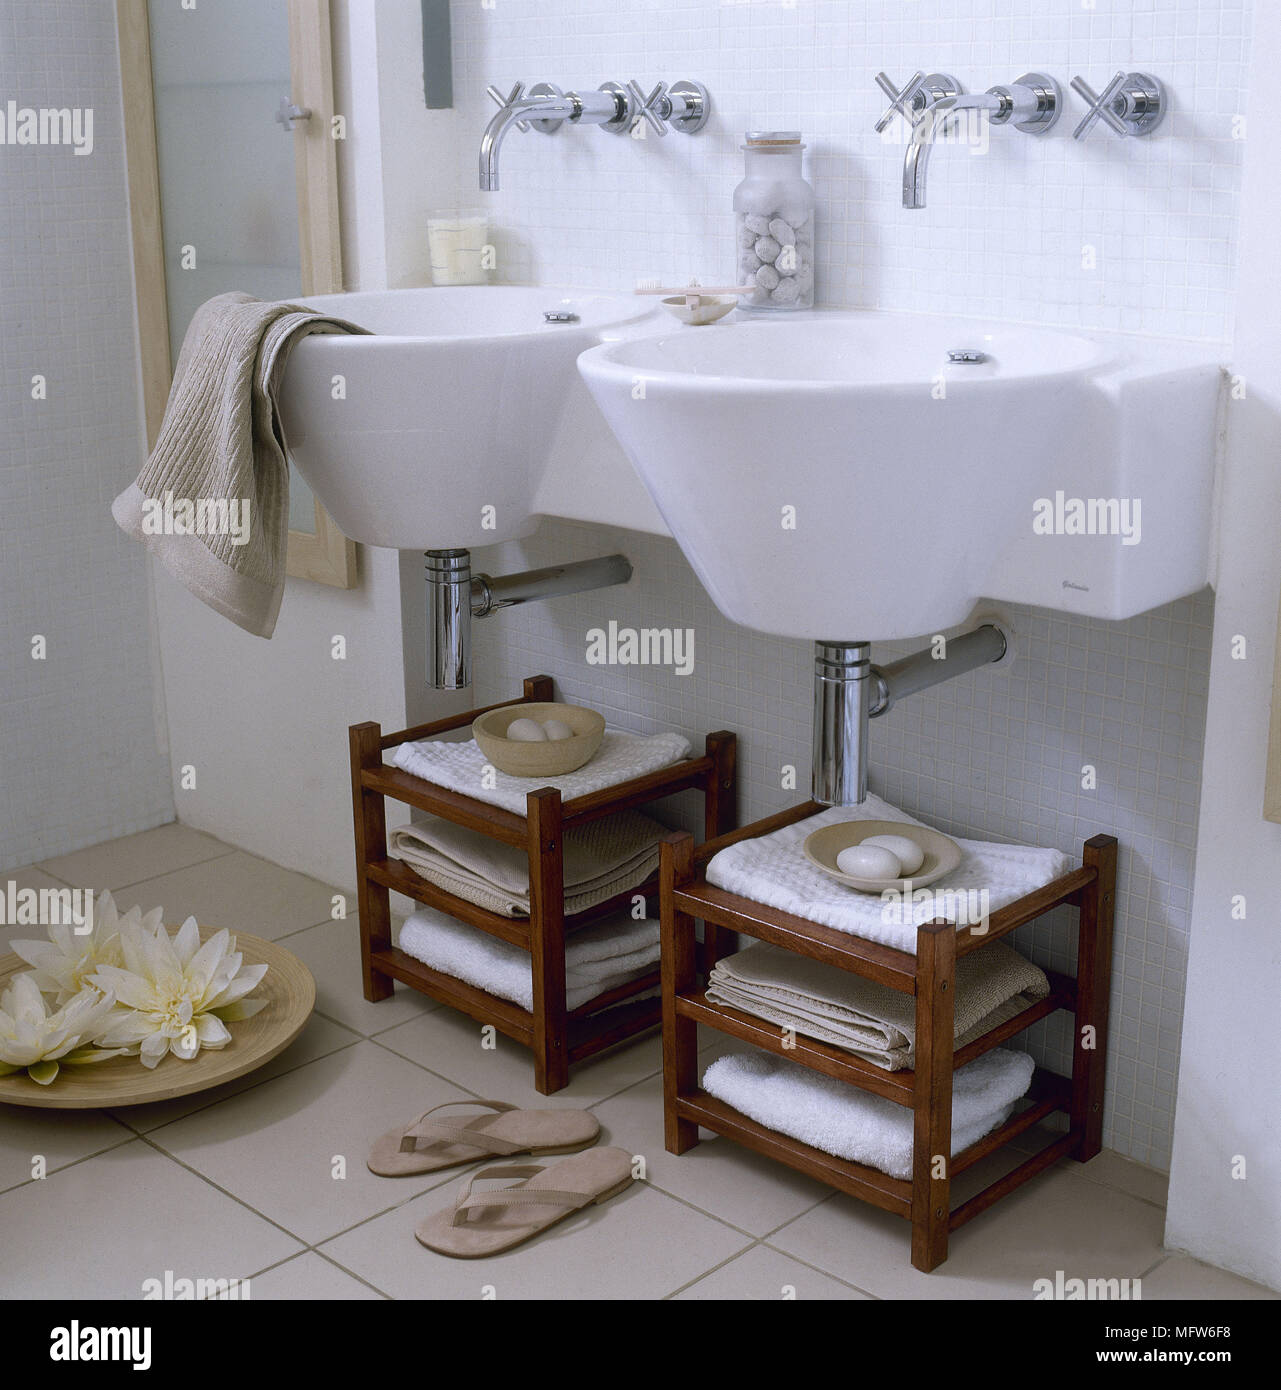 https://c8.alamy.com/comp/MFW6F8/a-modern-bathroom-with-twin-wall-mounted-wash-basins-wood-storage-shelf-units-tiled-floor-MFW6F8.jpg